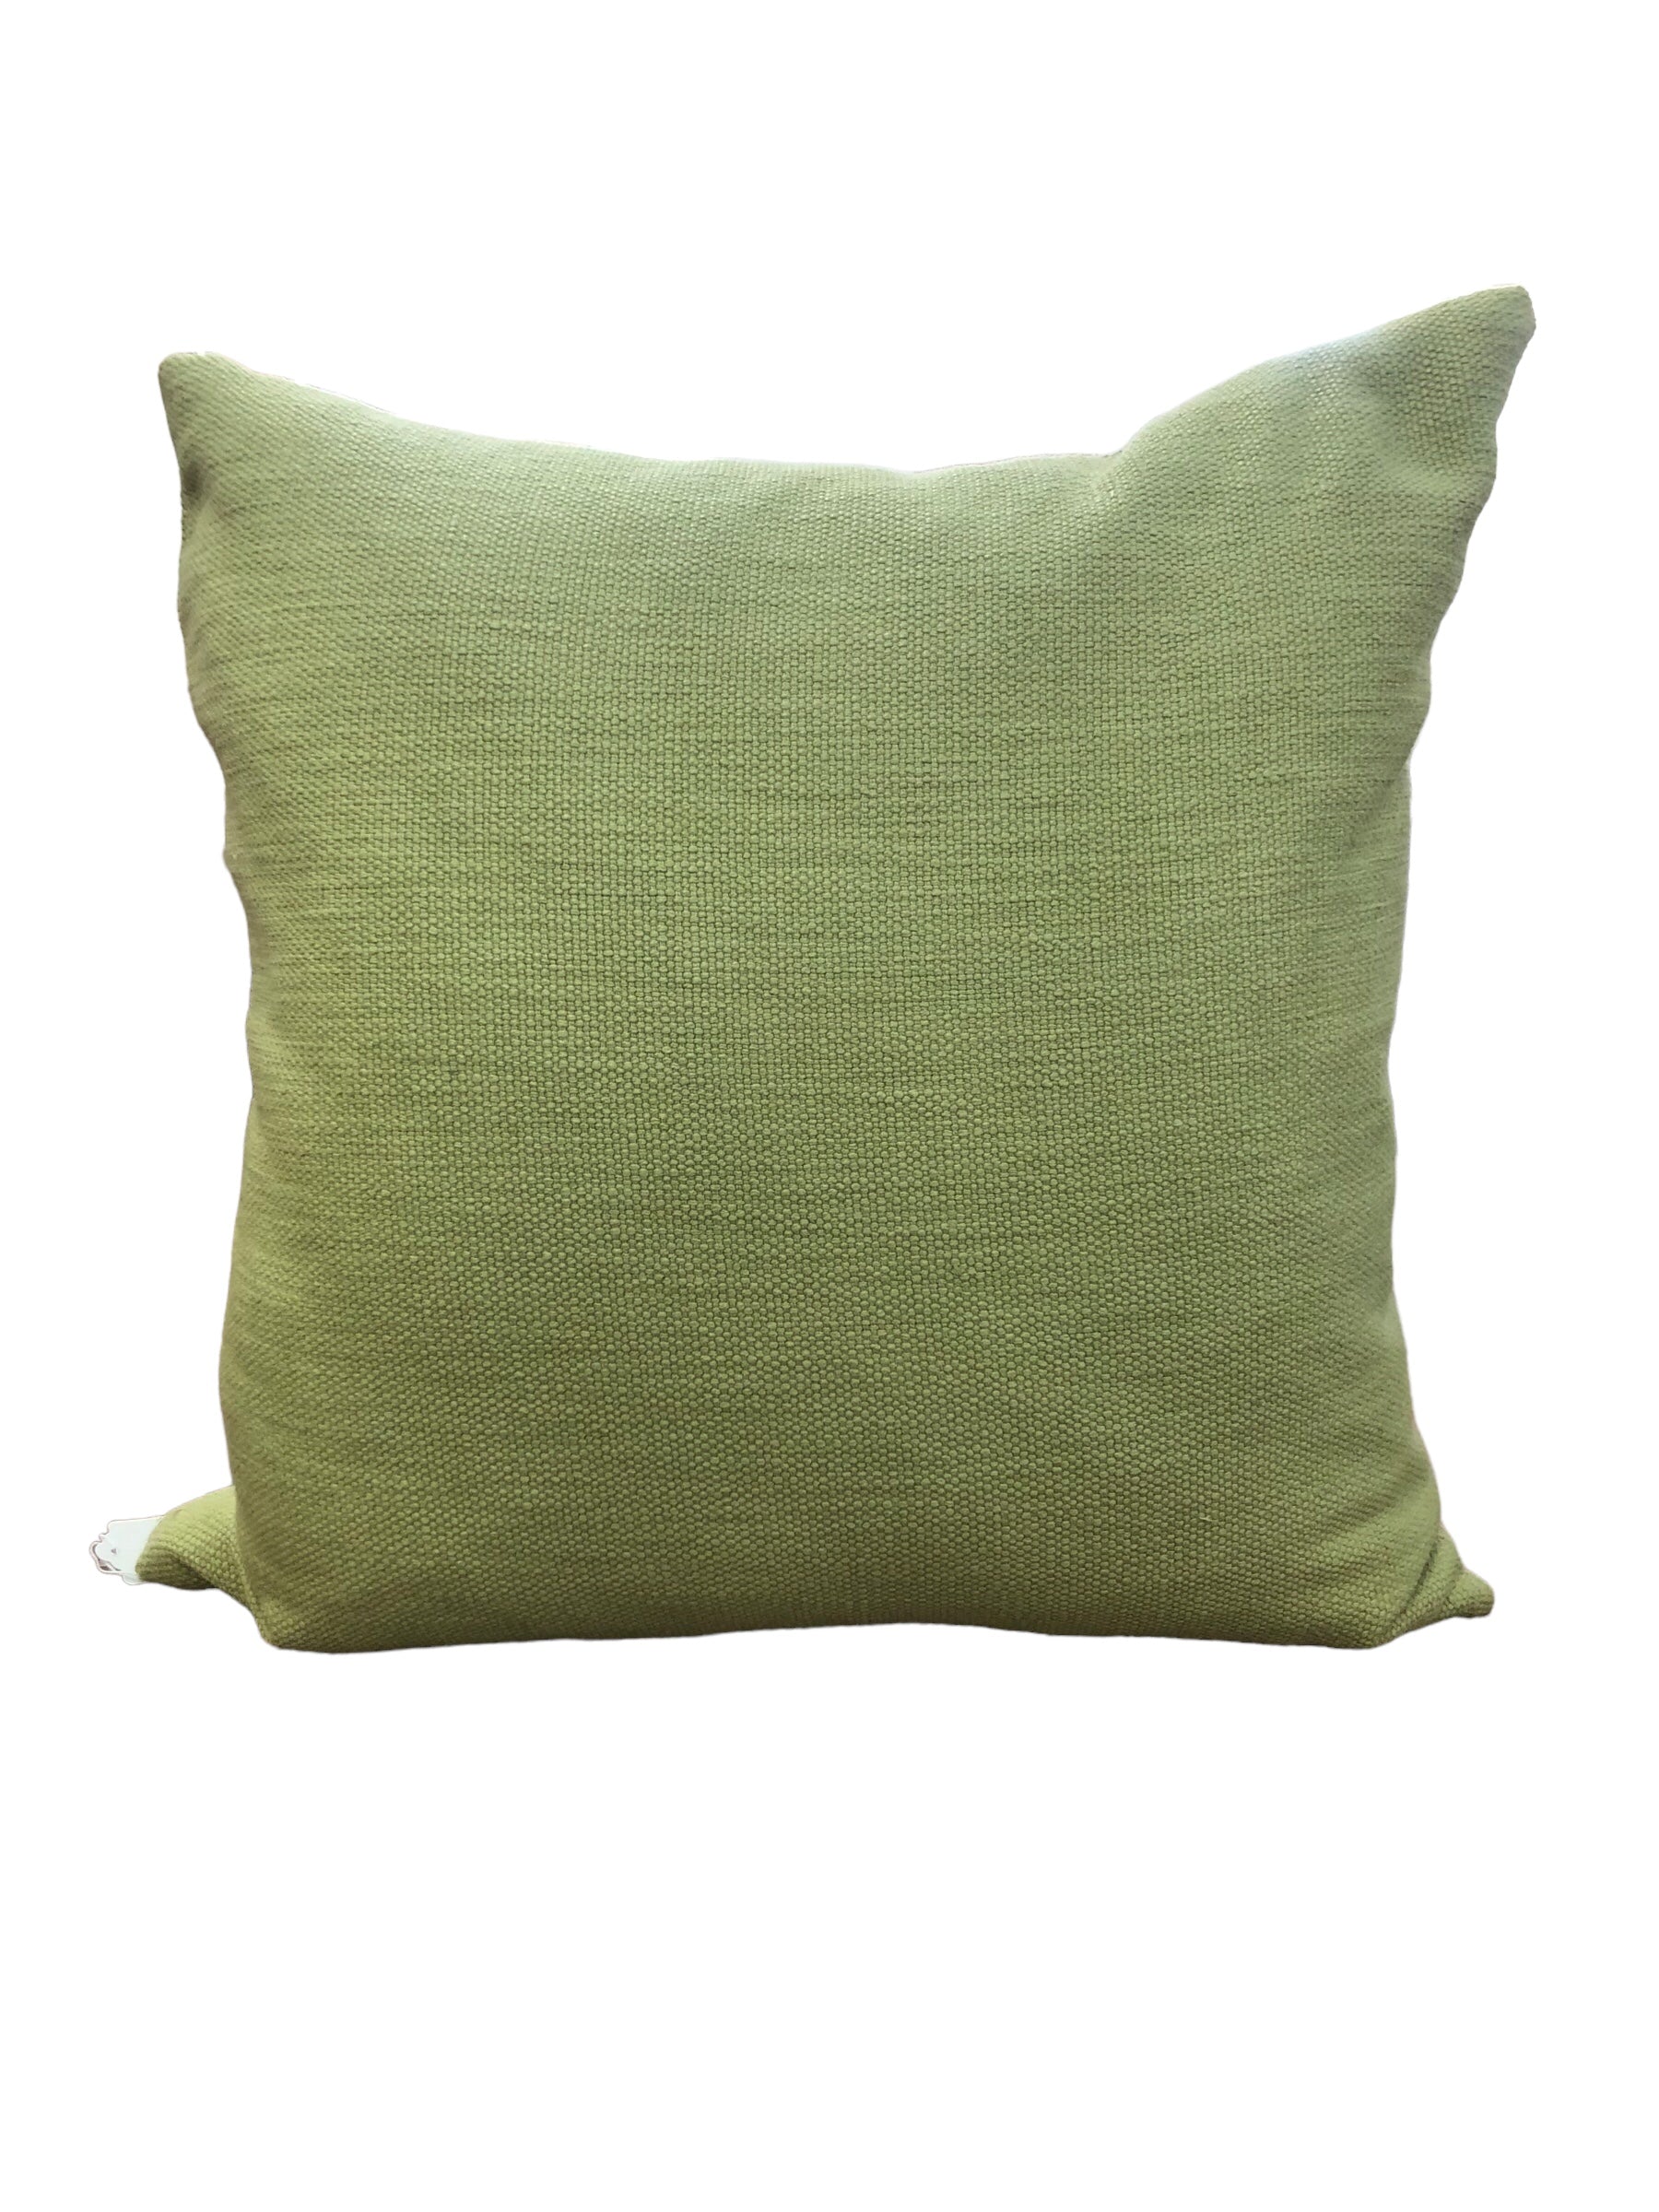 Tweed look Green Pillow